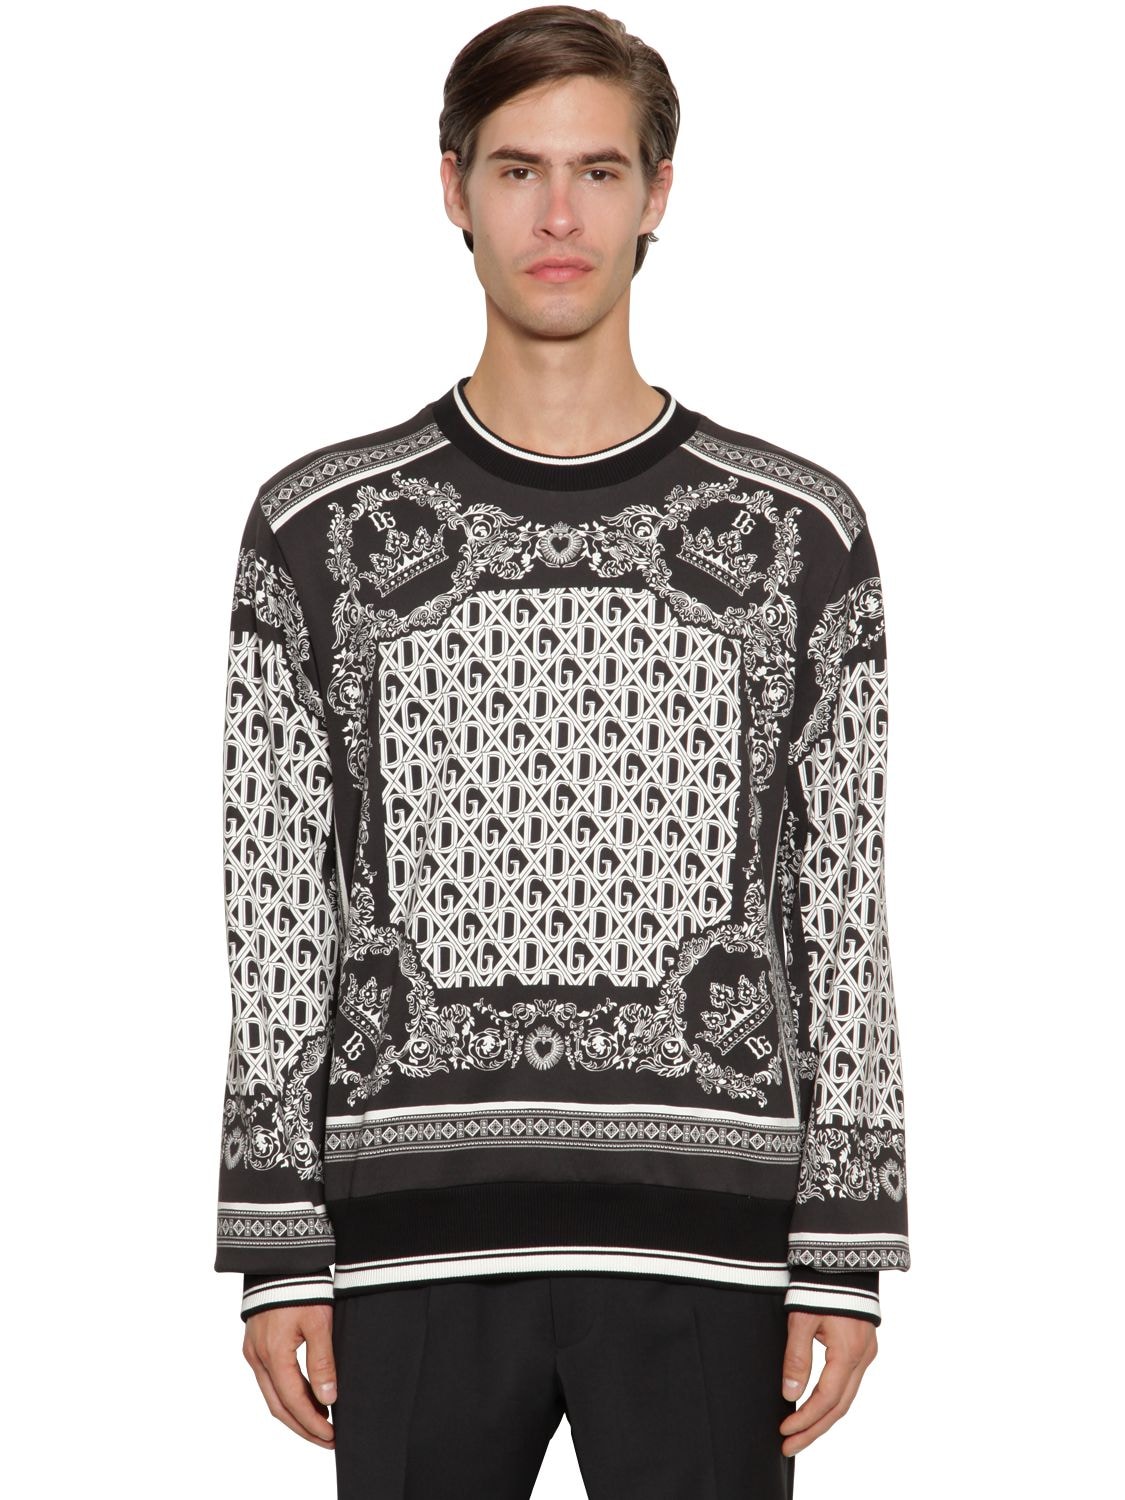 Bandana Printed Cotton Sweatshirt | The Fashionisto